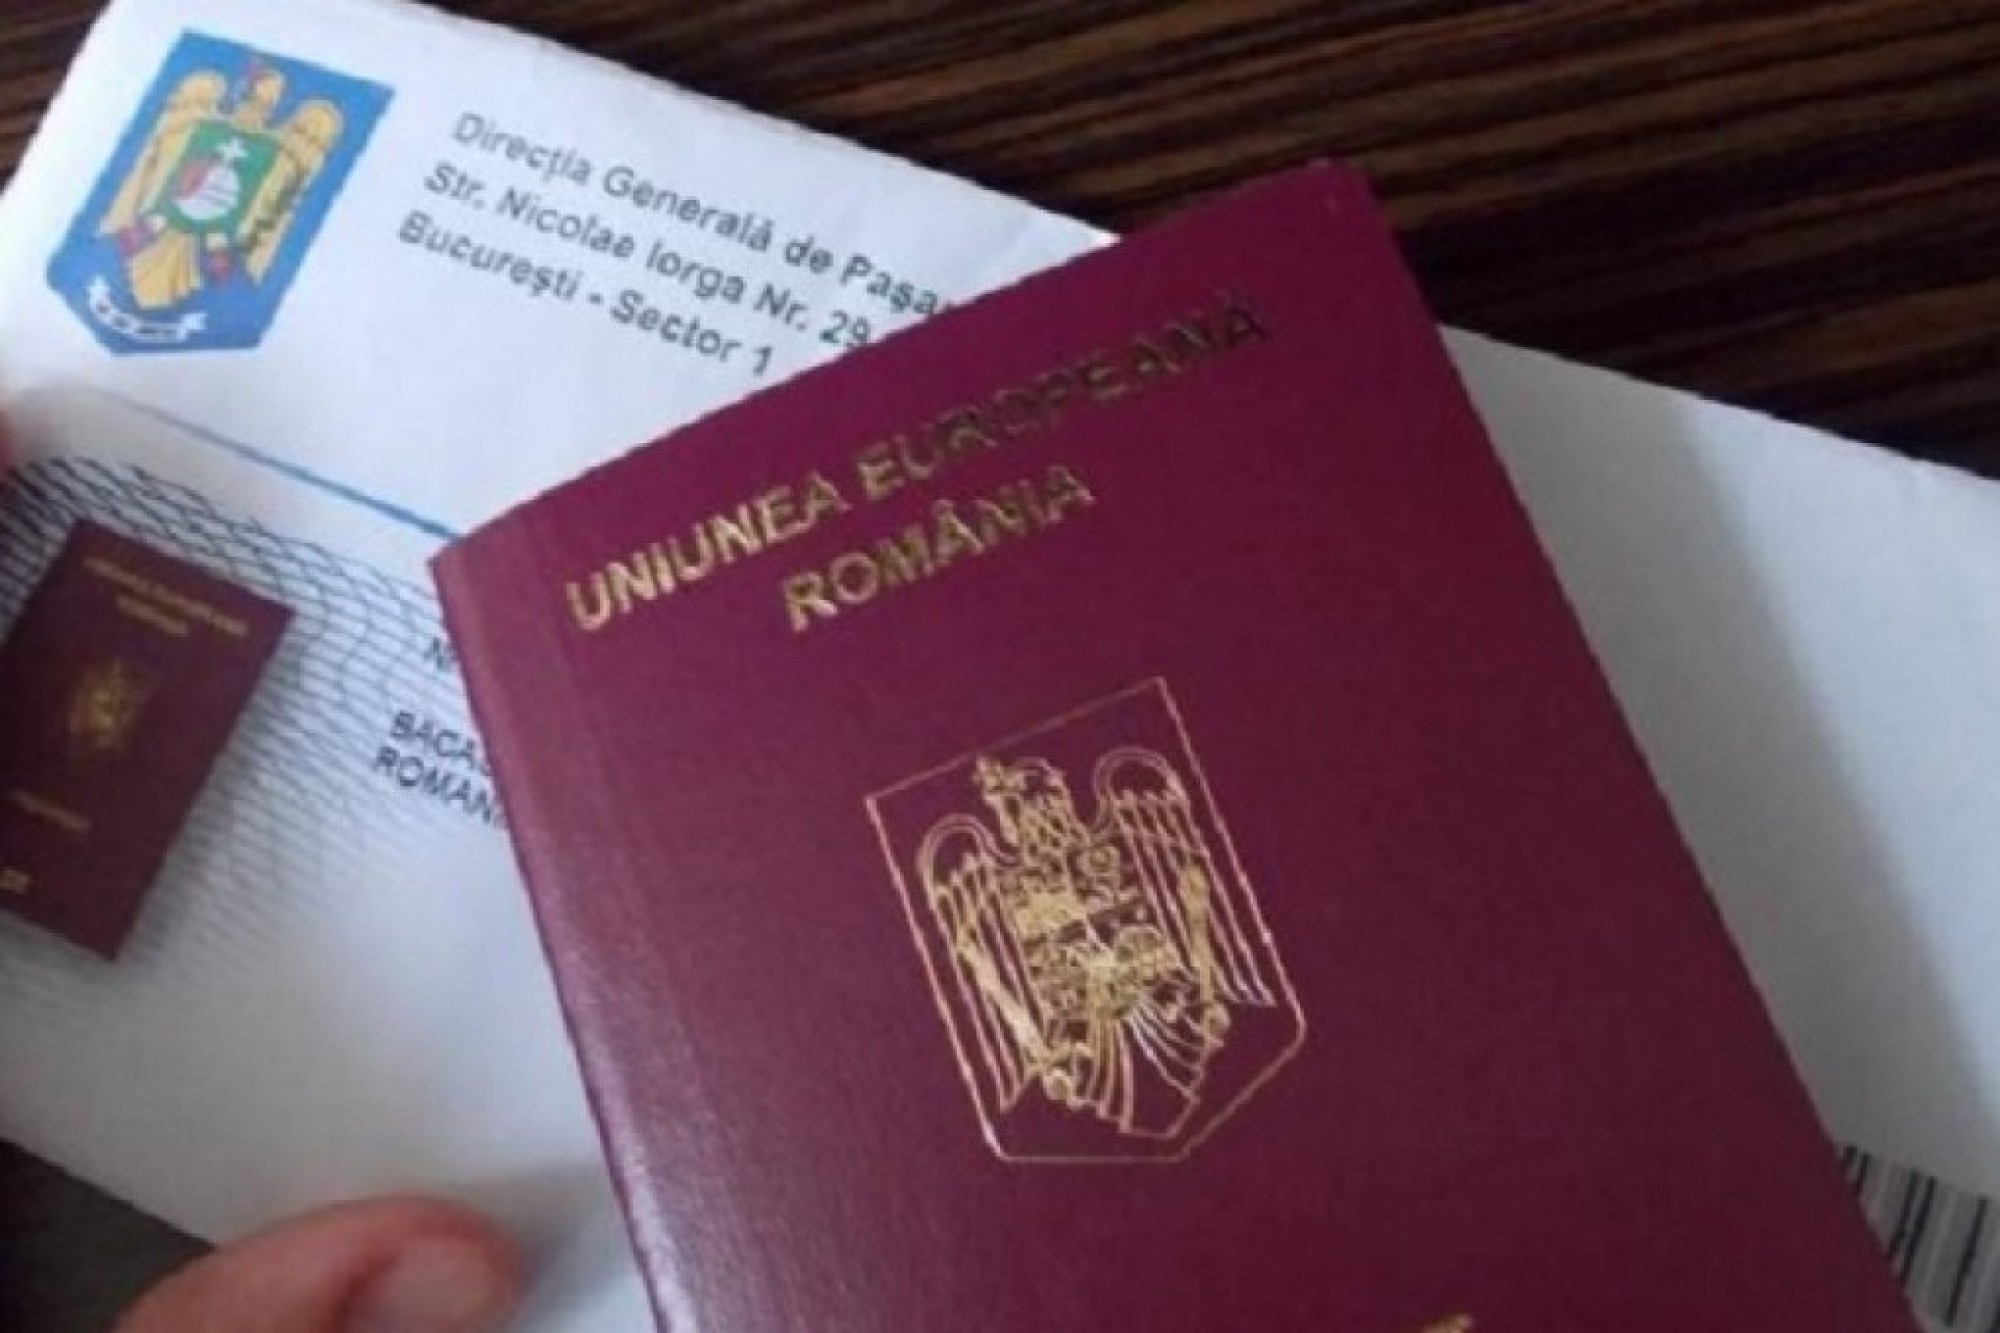 Frenzy physicist subtle Taxa de pașaport nu va mai putea fi plătită la mall - România Liberă